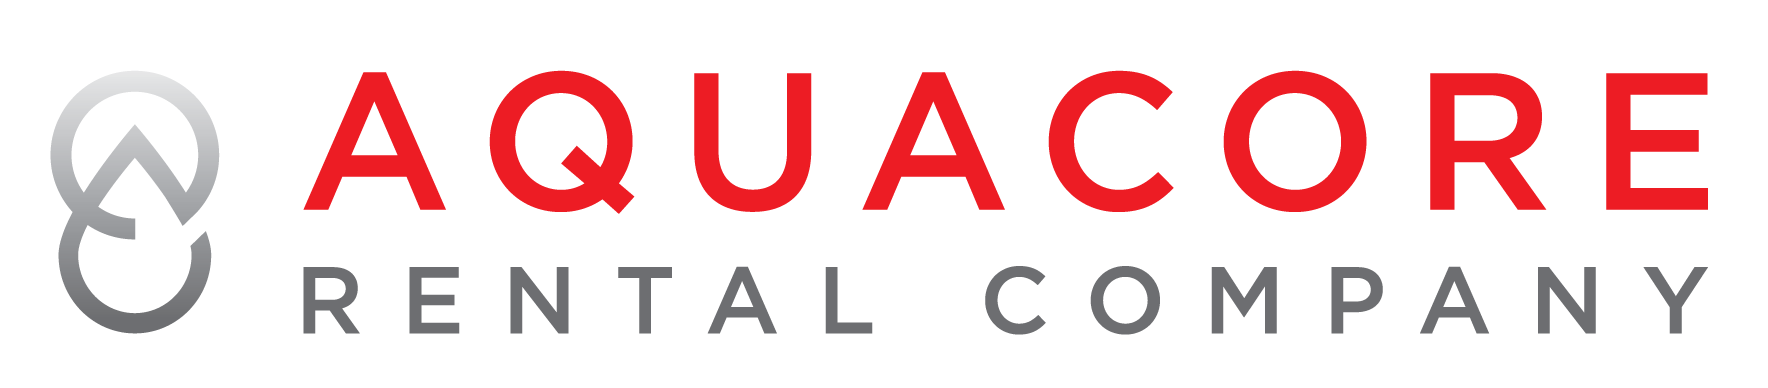 Aquacore Rental Company